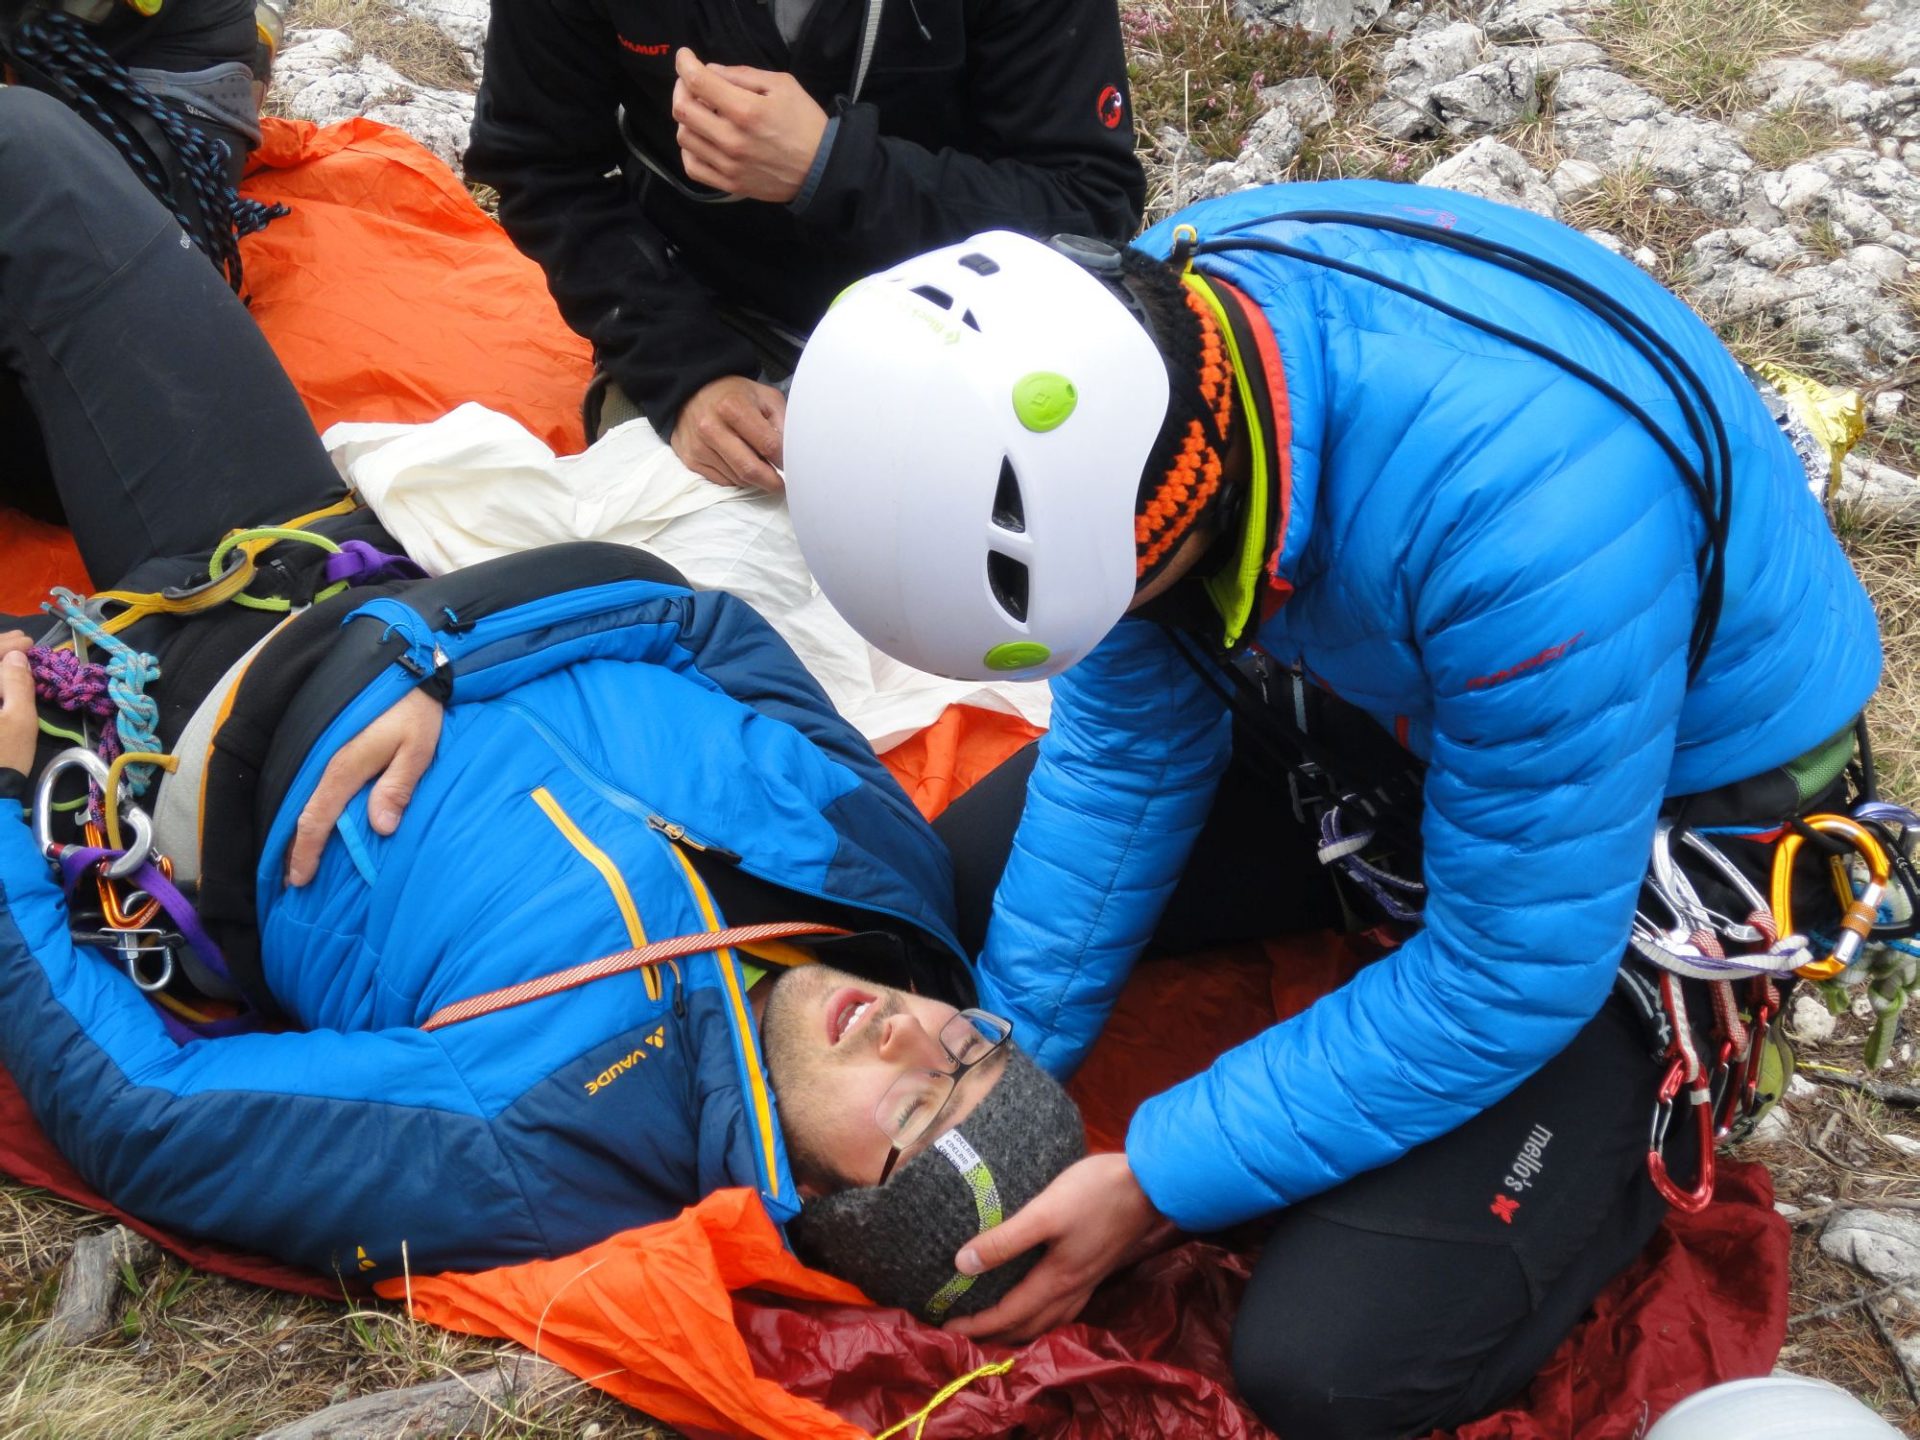 Erste Hilfe und Betreuung des Verletzten © Ewald Guarda